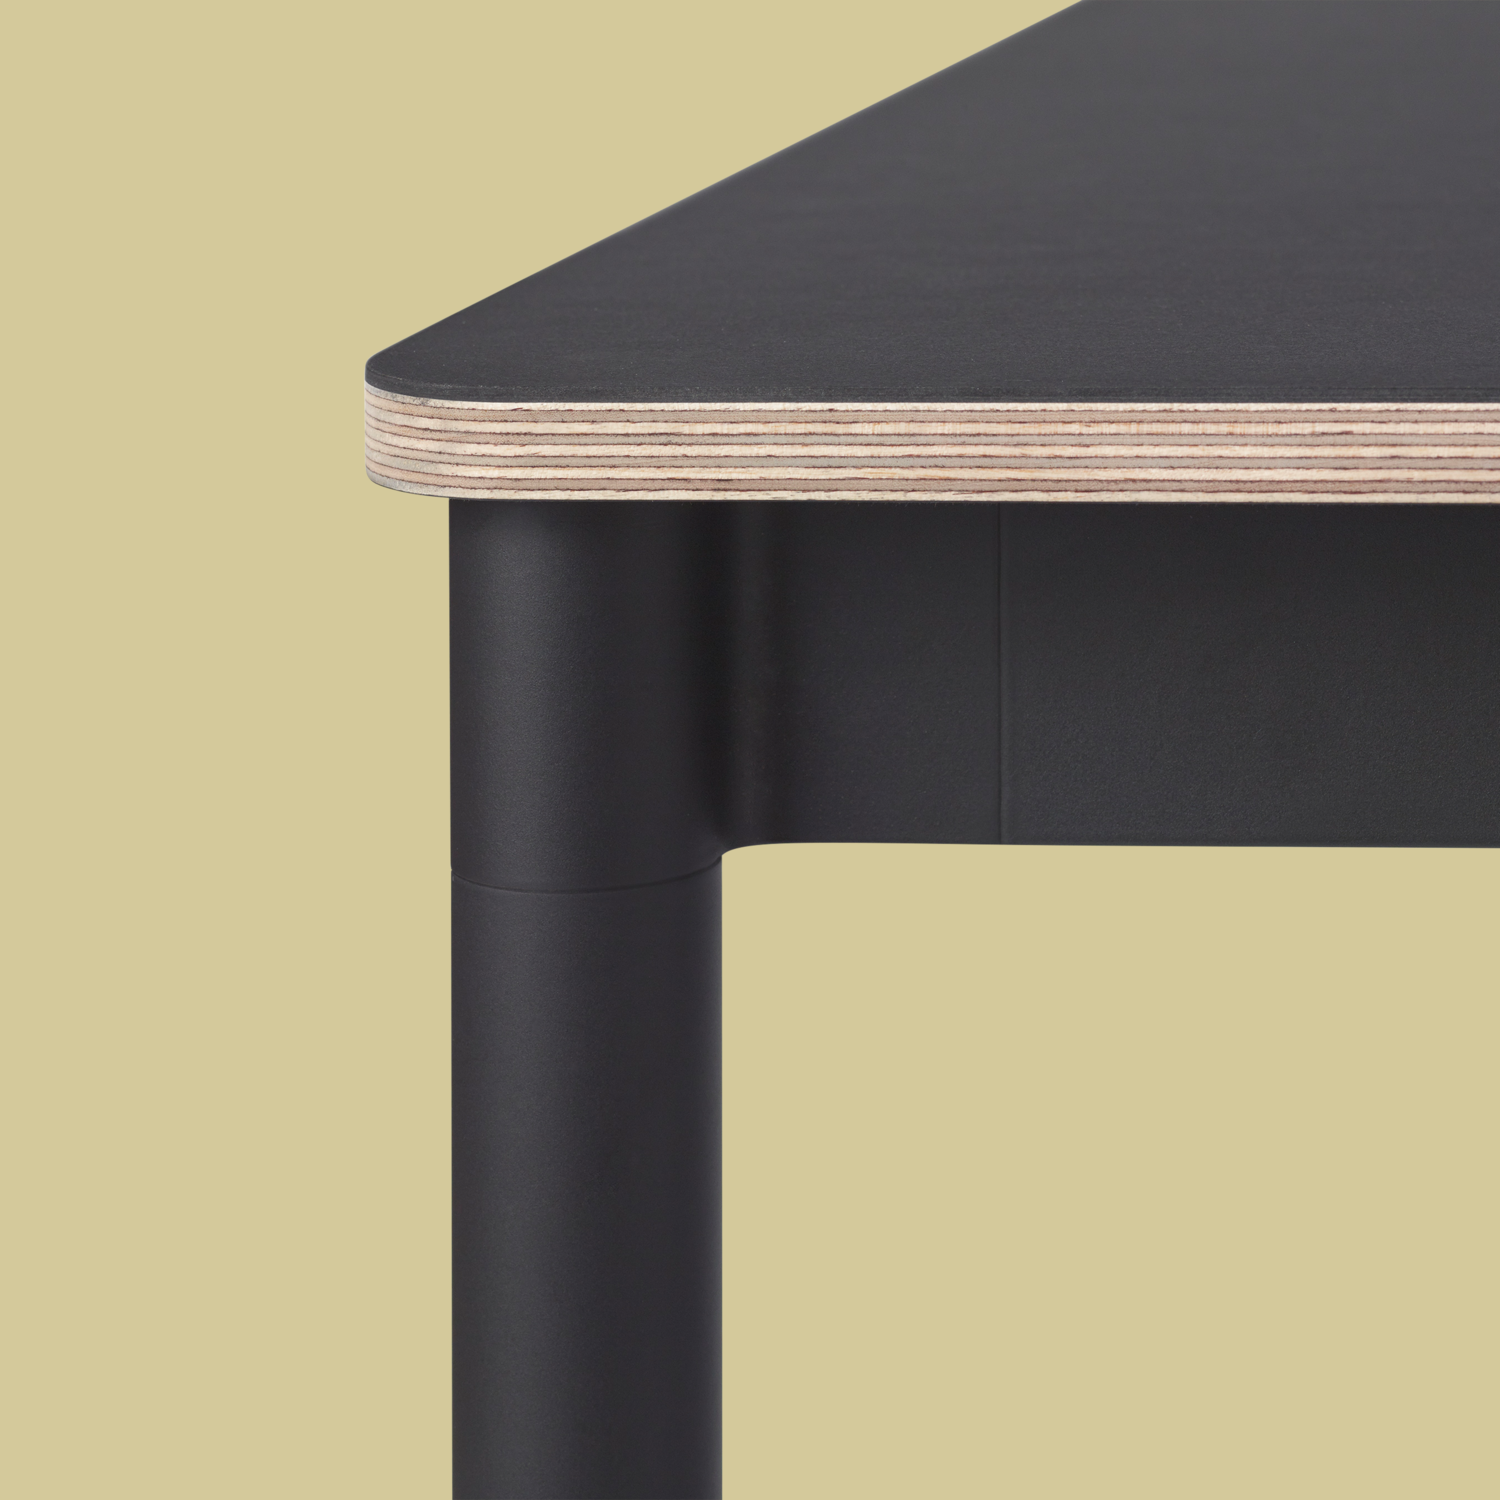 Base Tisch Square in Weiss / Schwarz präsentiert im Onlineshop von KAQTU Design AG. Schreibtisch ist von Muuto